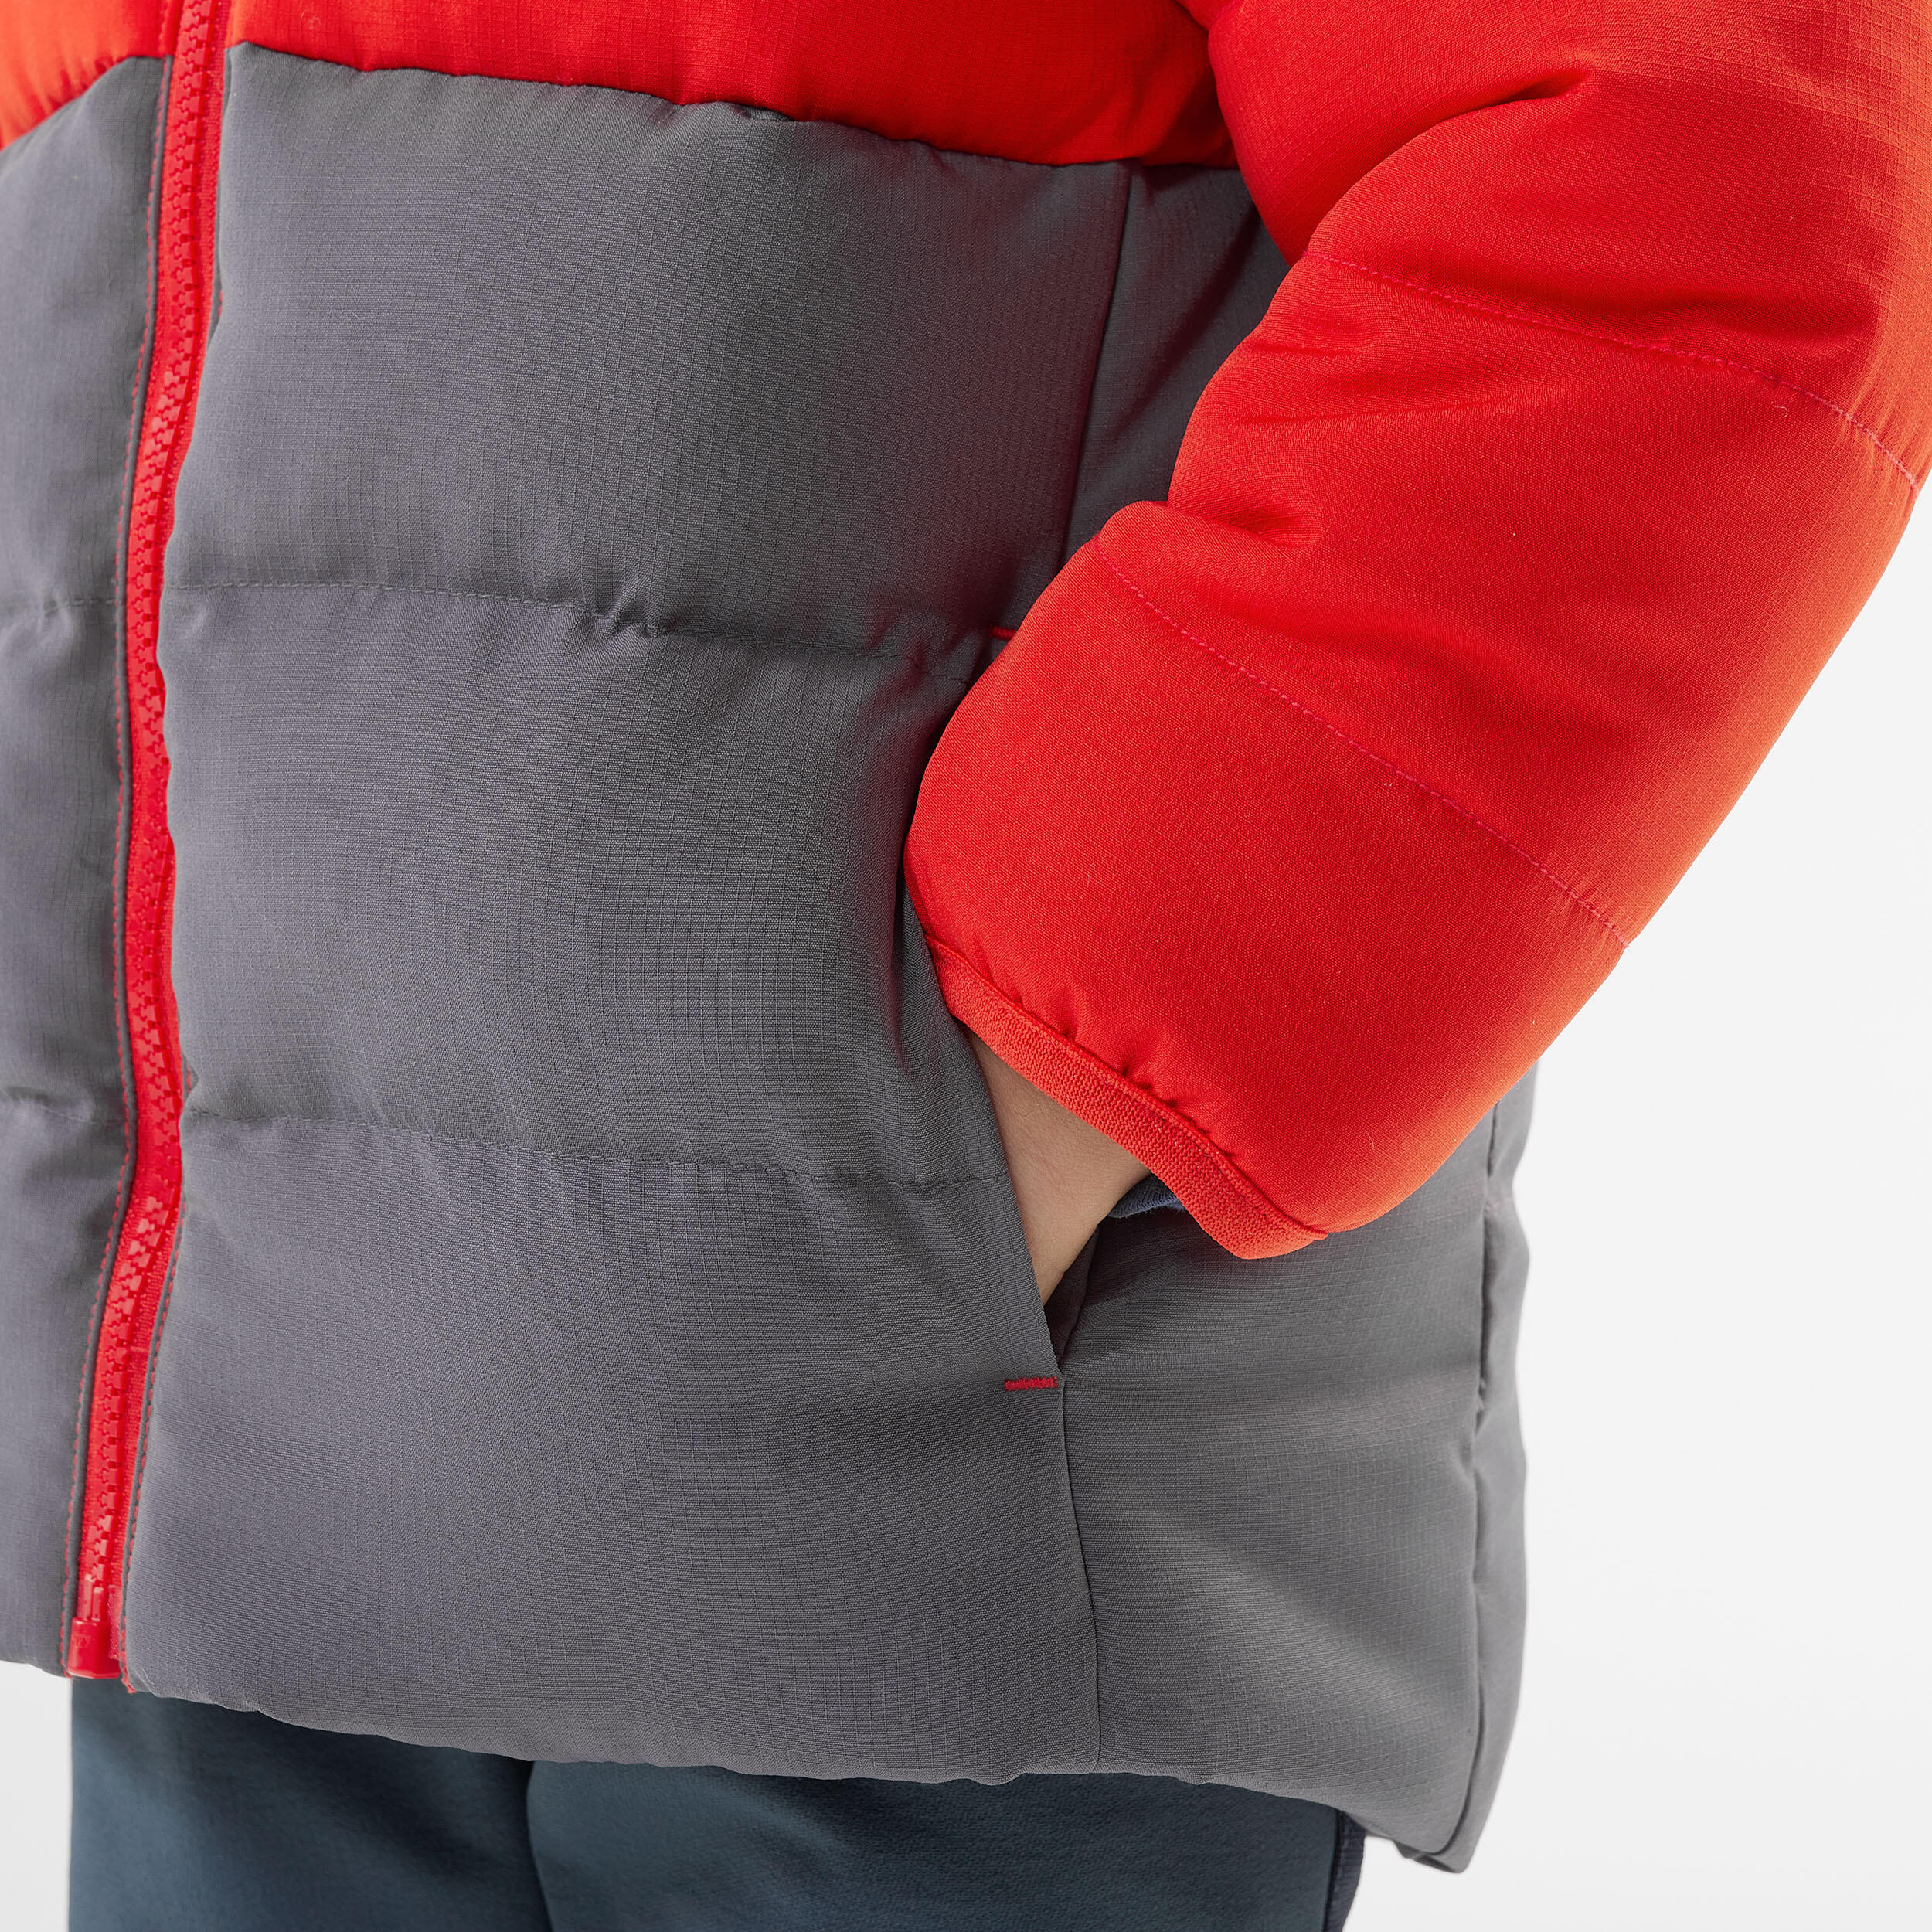 Kids’ Hiking Padded Jacket - Aged 2-6 - Orange and Grey 7/8